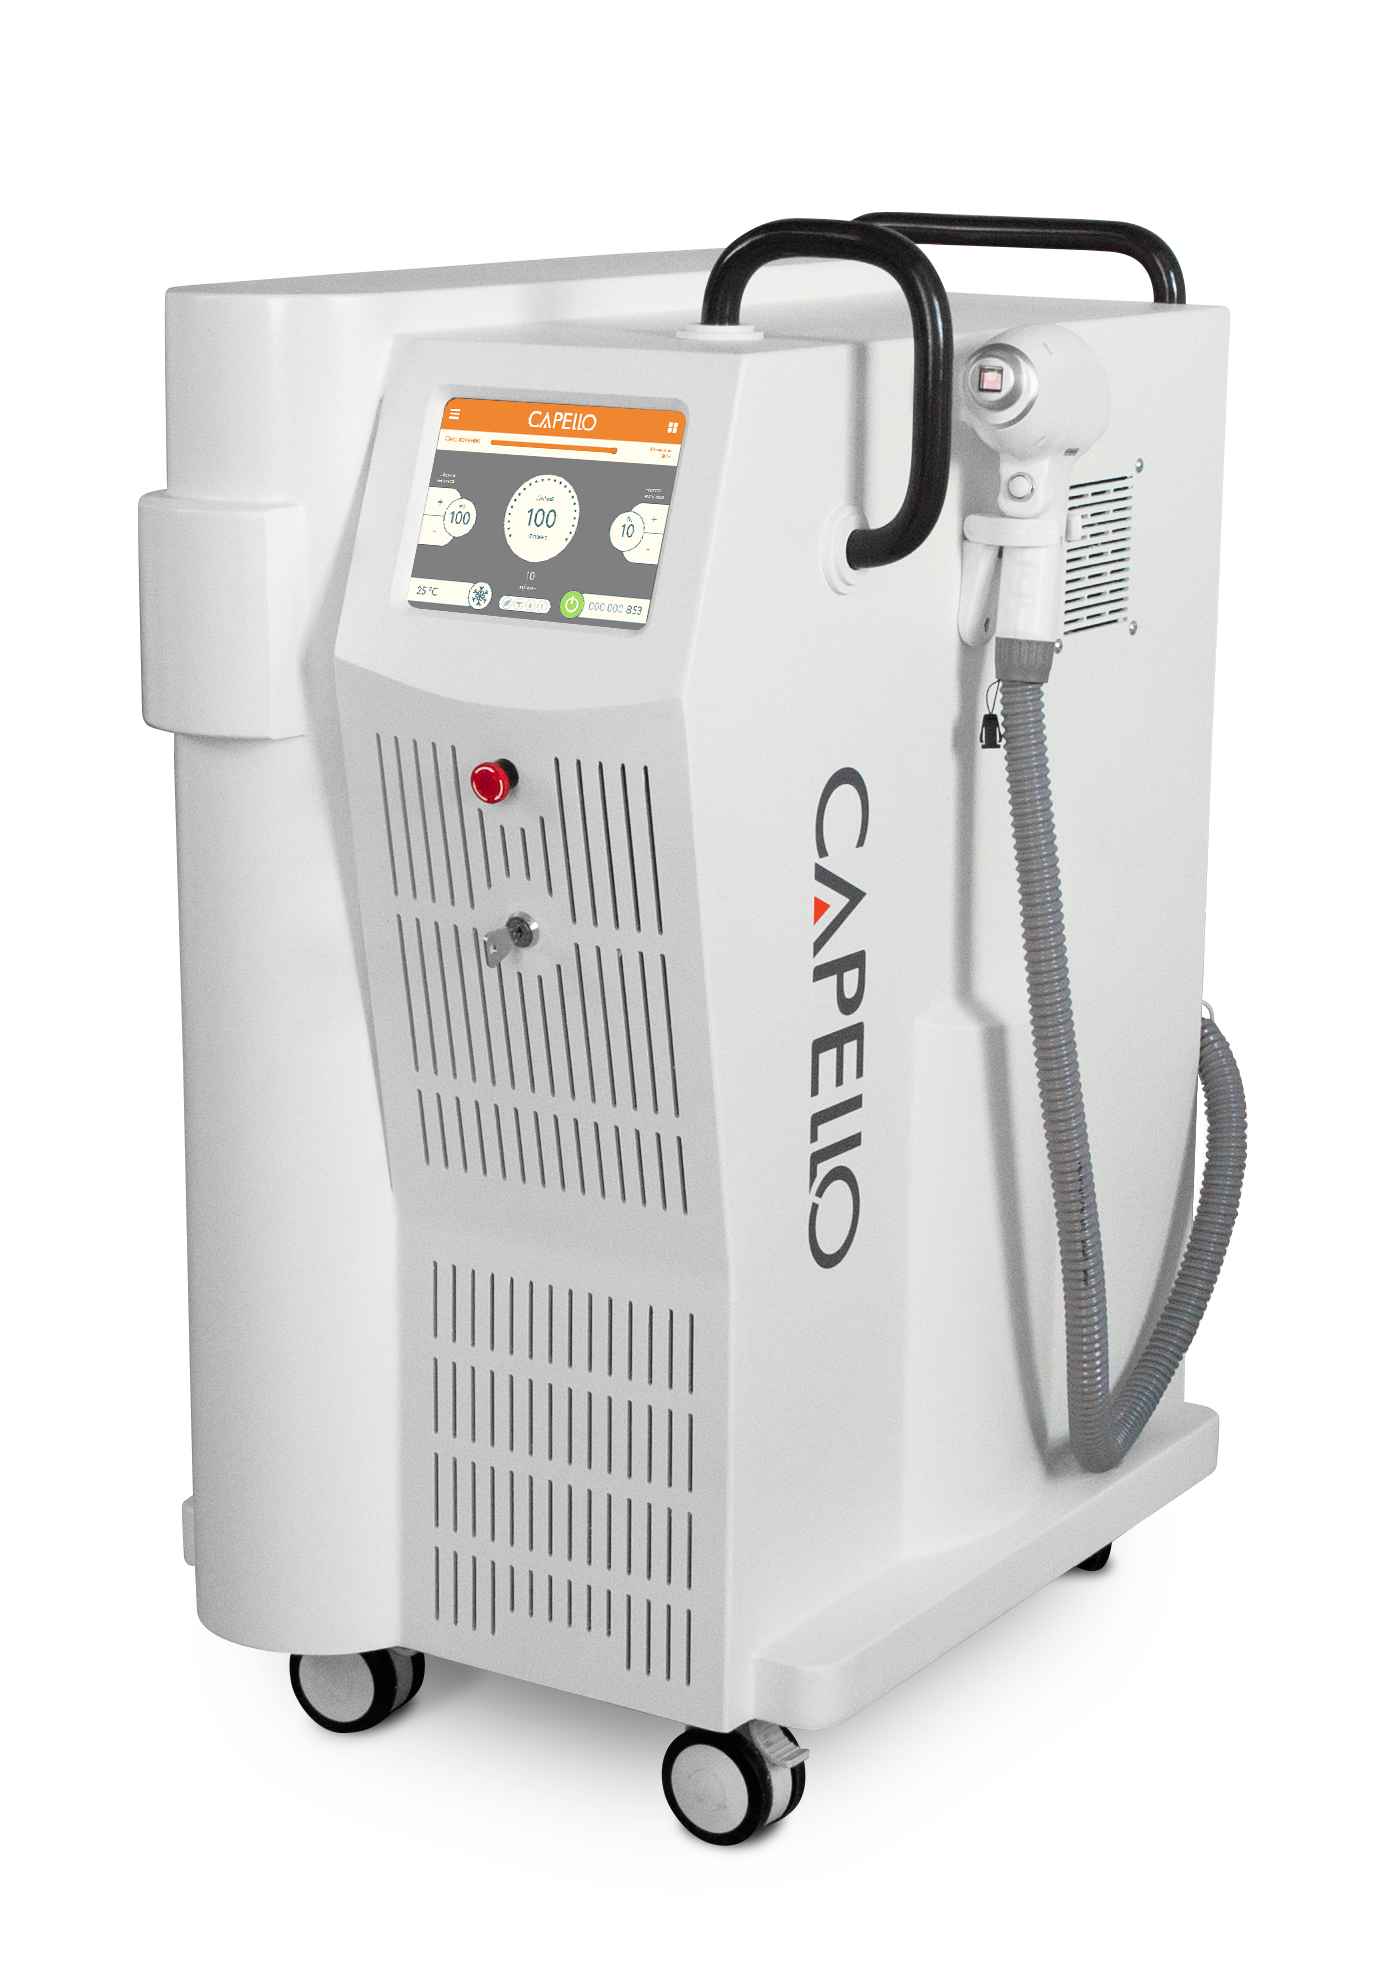 Диодный лазер CAPELLO Luxe для эпиляции и омоложения кожи